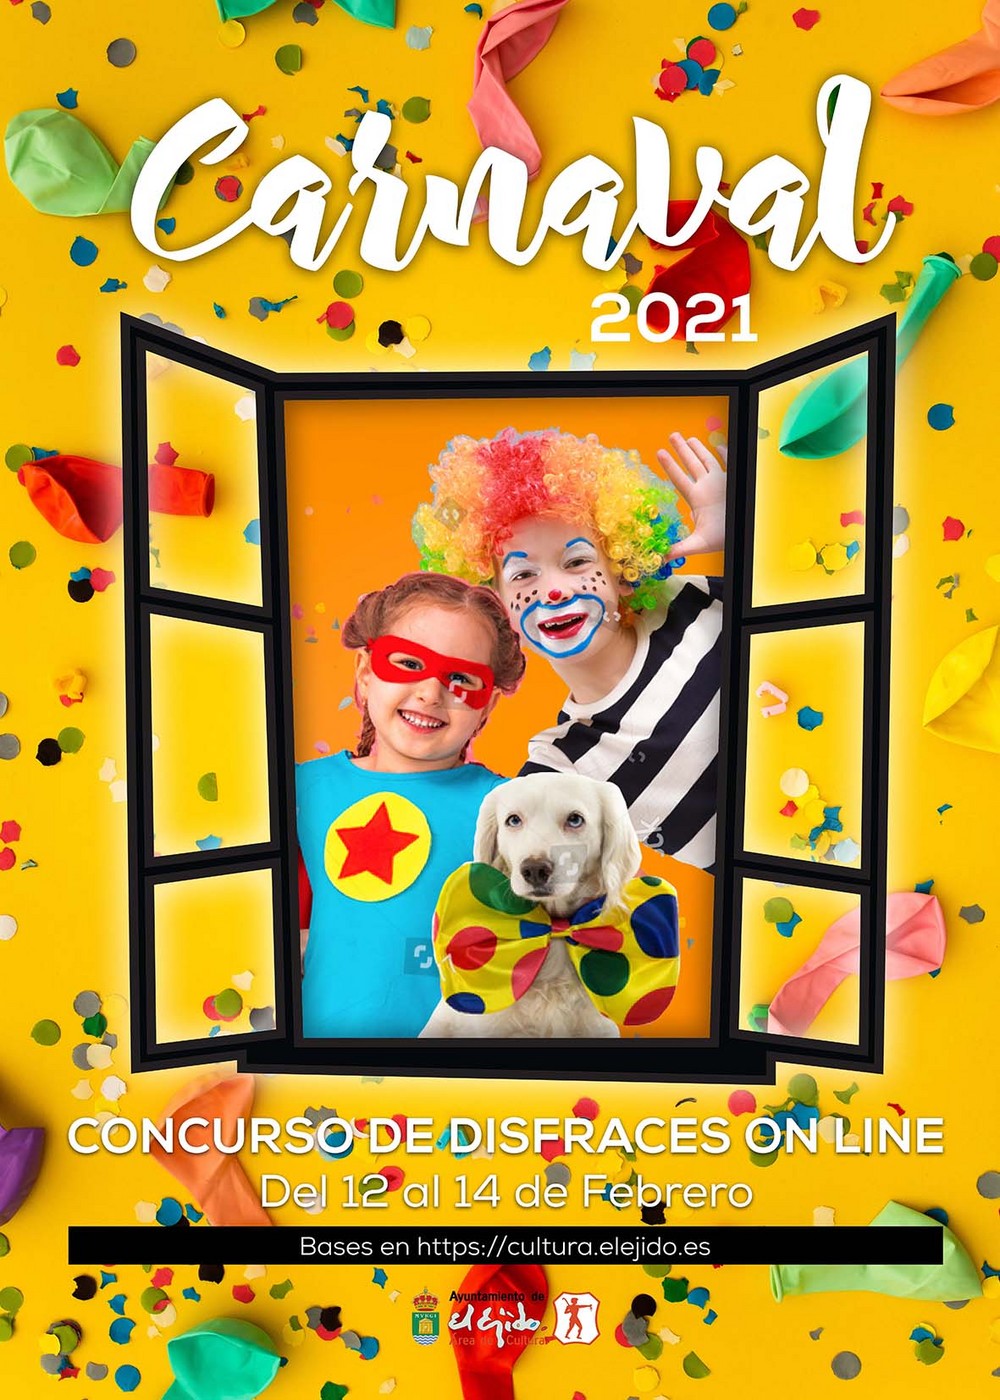 El Ejido organiza un concurso de disfraces ‘online’ como propuesta creativa y alternativa para el Carnaval 2021